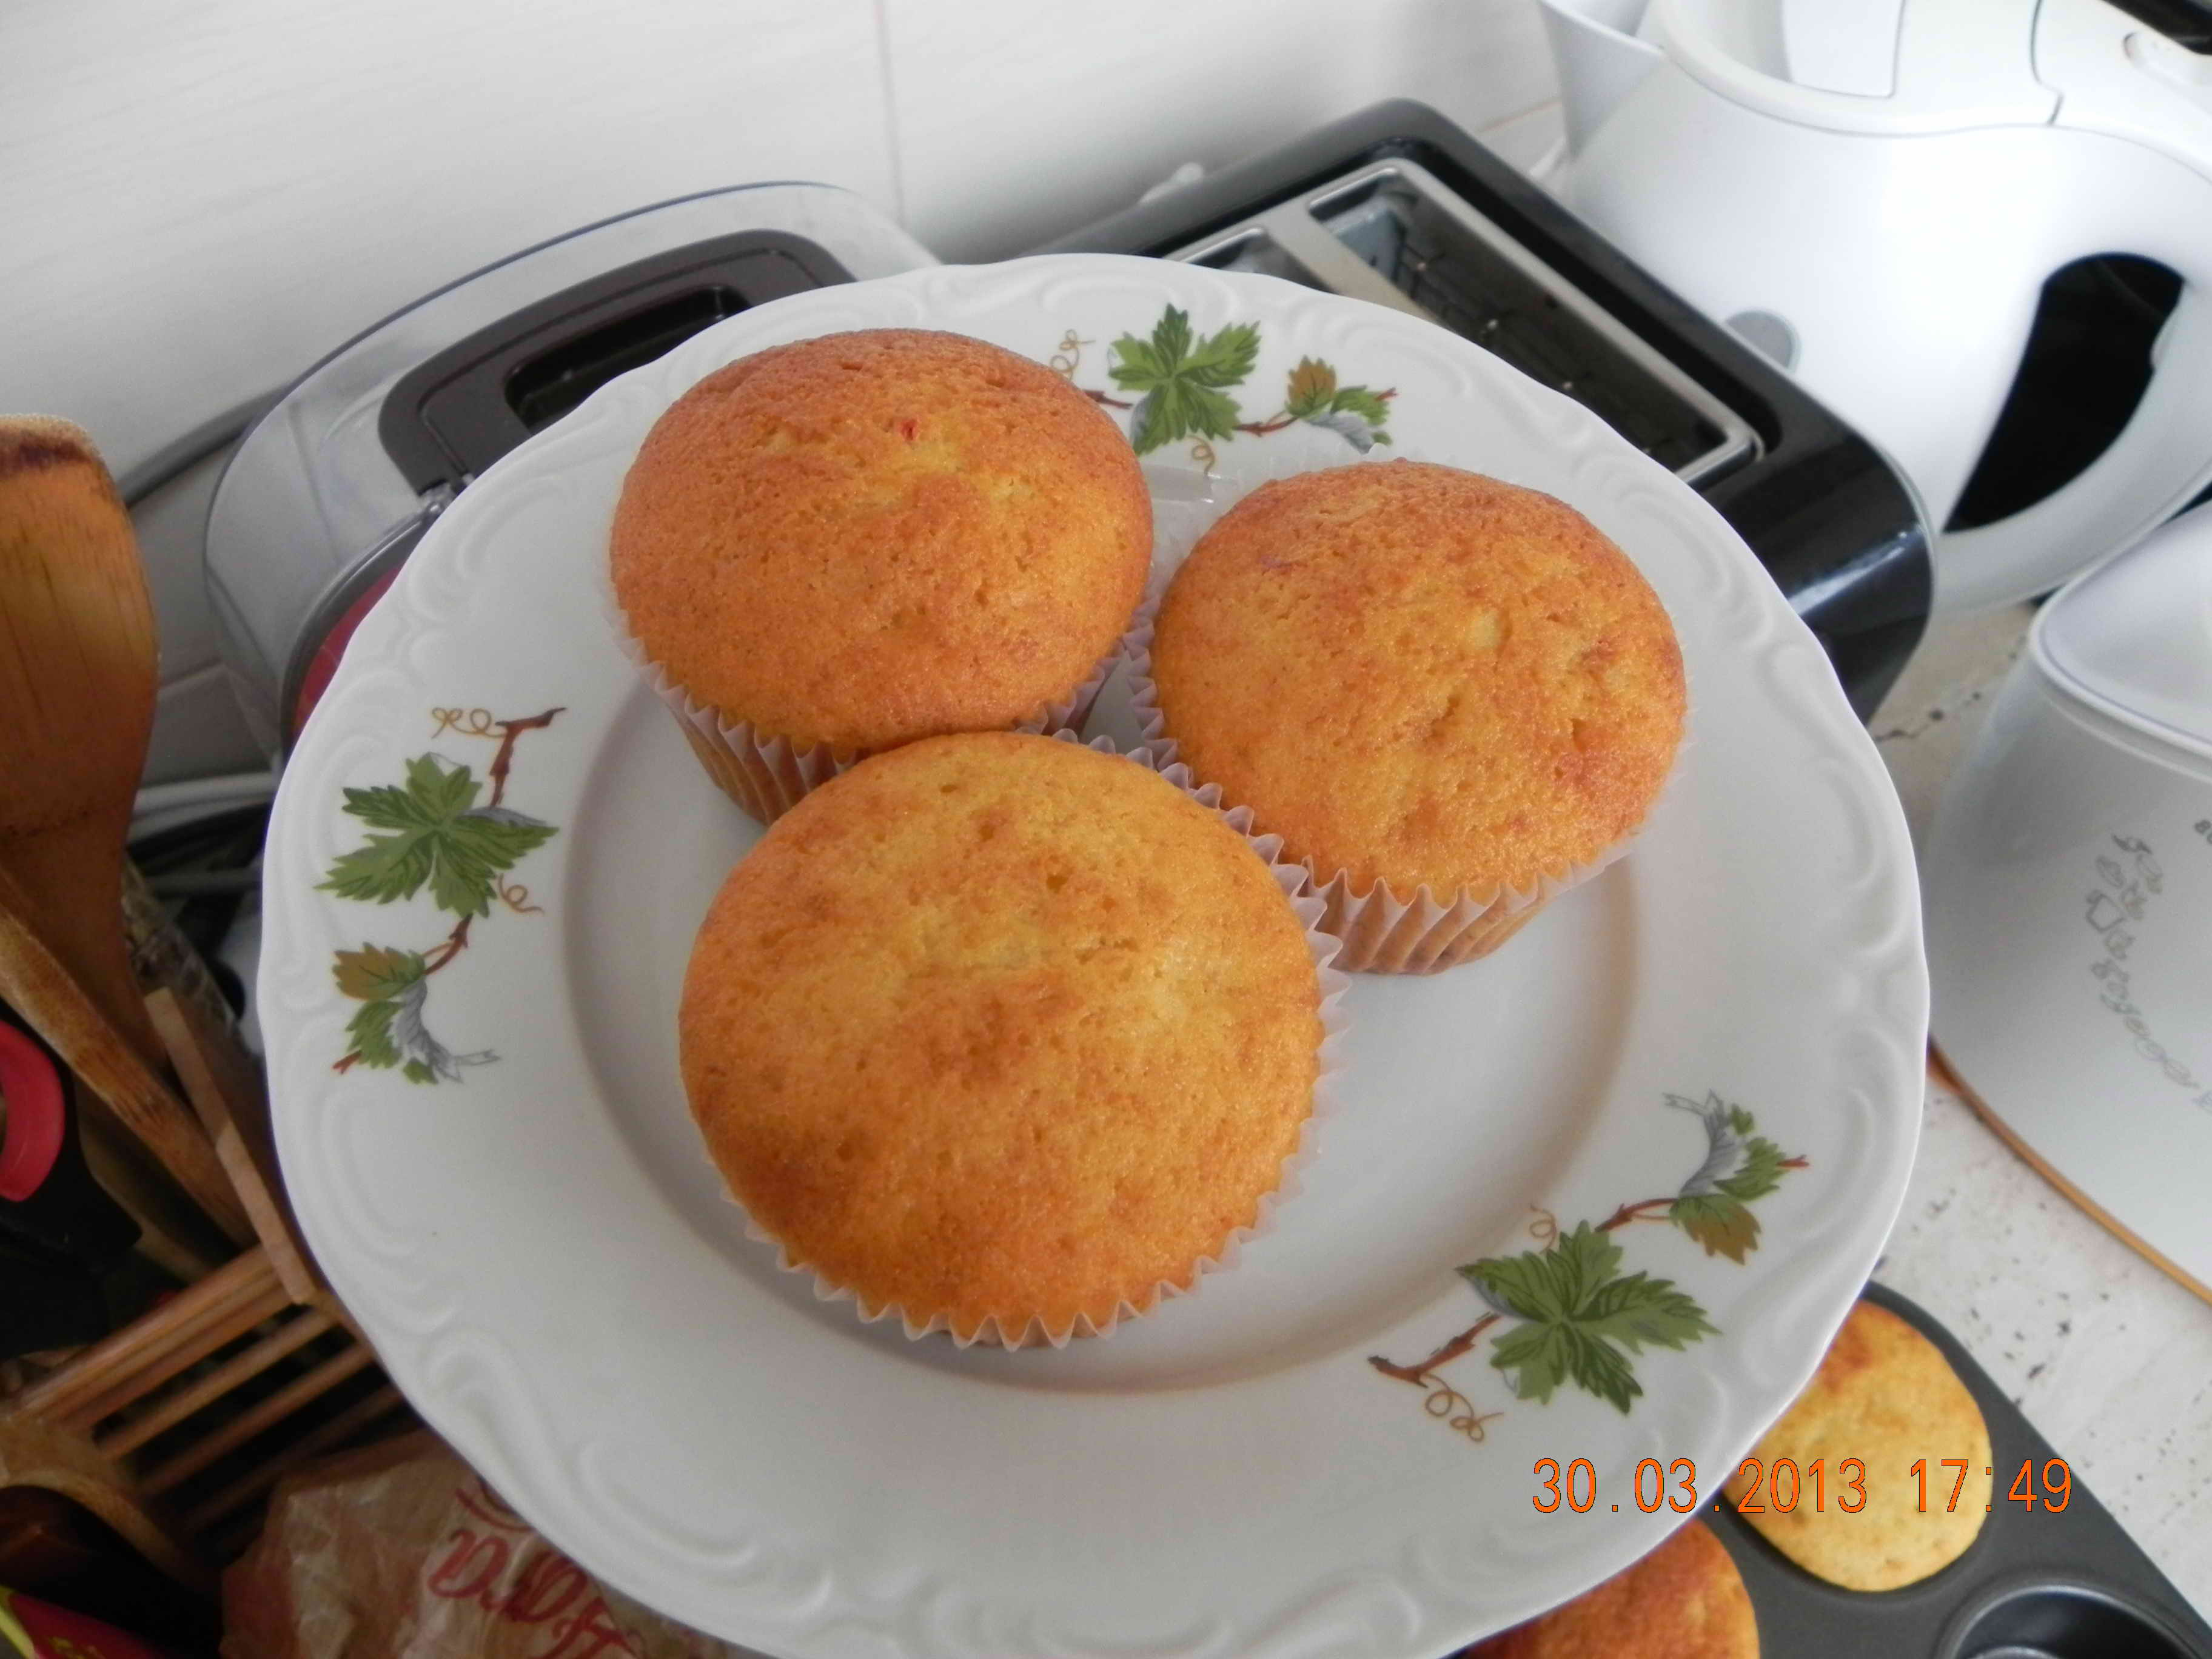 Briose(Cupcakes) pufoase cu merisoare si stafide